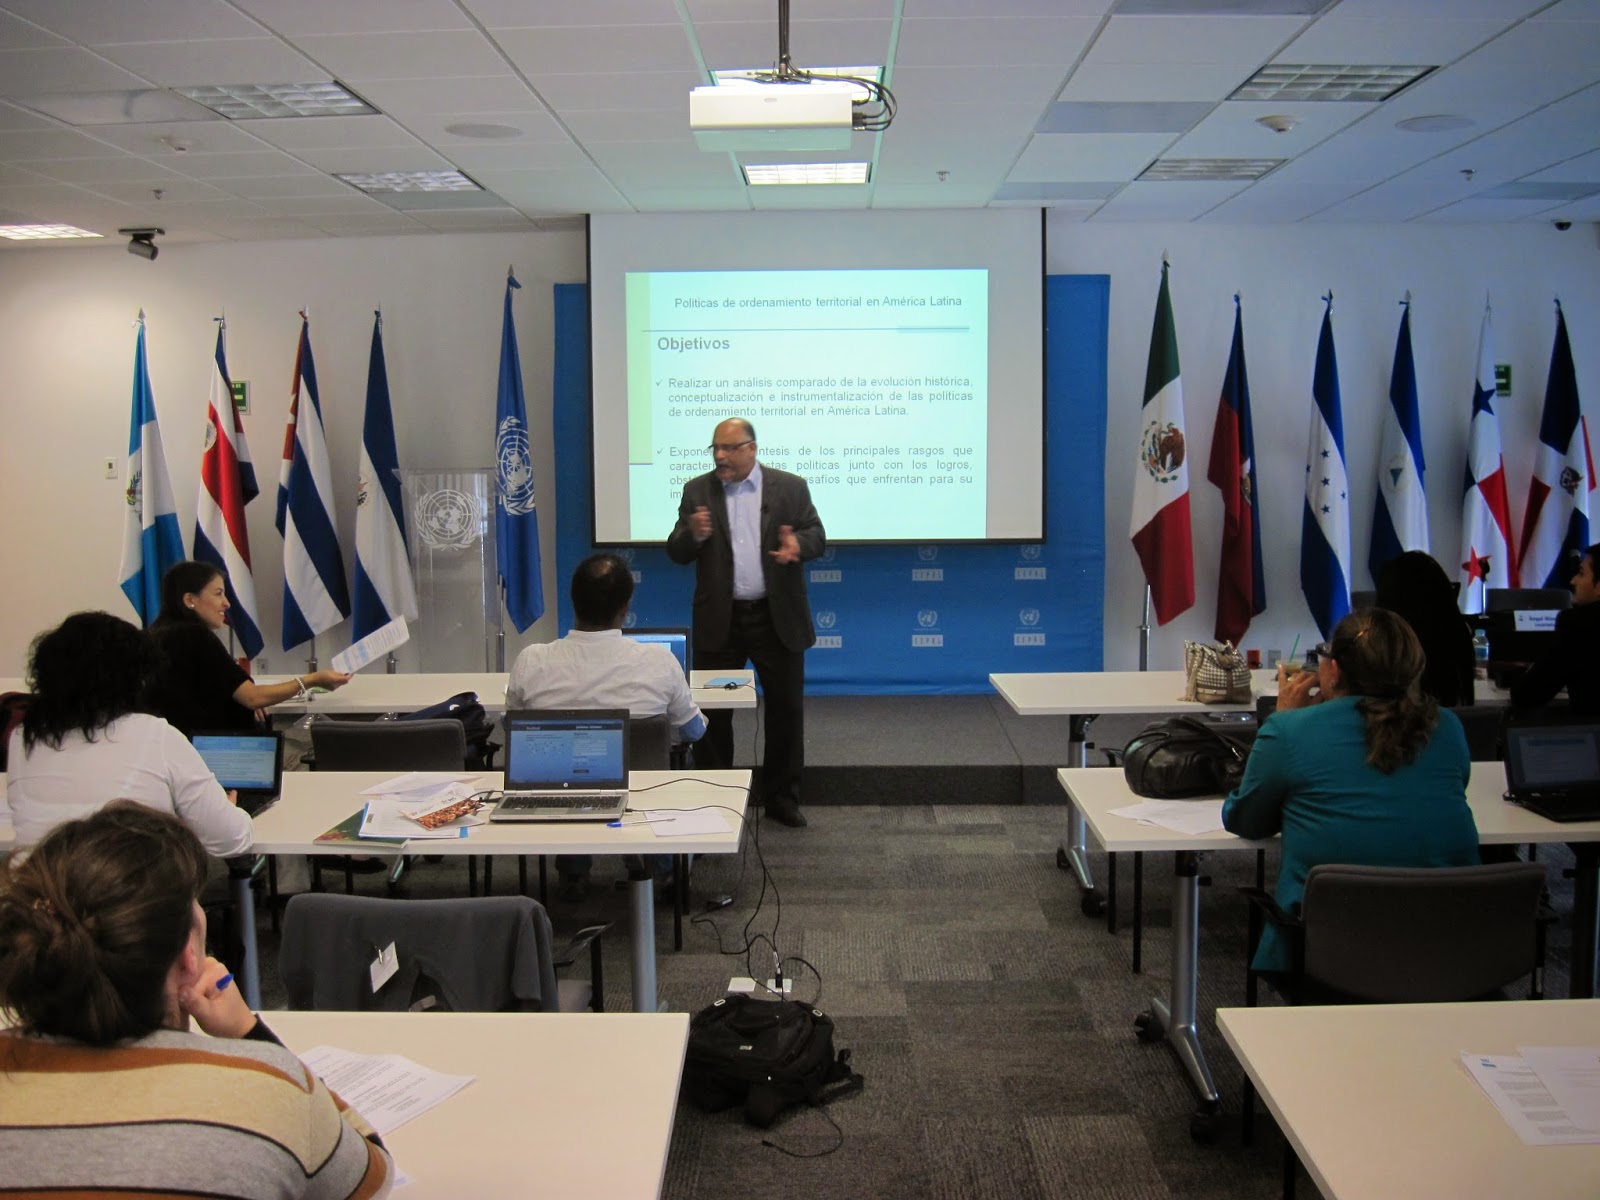 Políticas de ordenamiento territorial en América Latina, CEPAL/ILPES, México D.F.